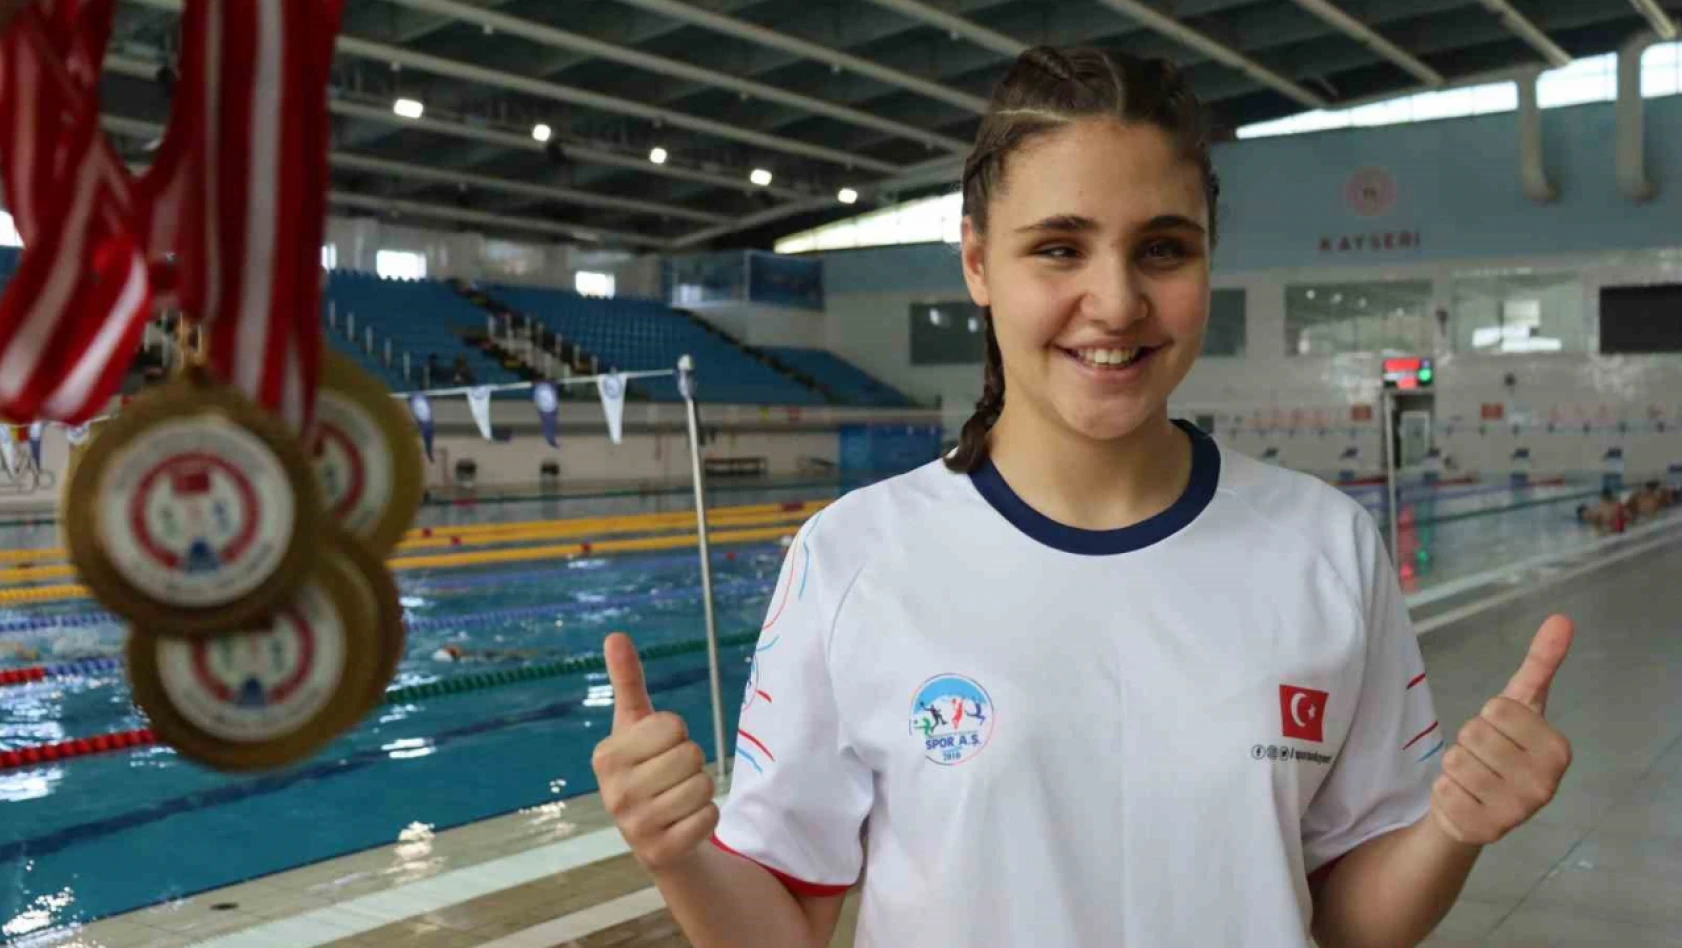 Kayseri'de hissederek yüzmeyi öğrenen Cemre büyük başarıya imza attı